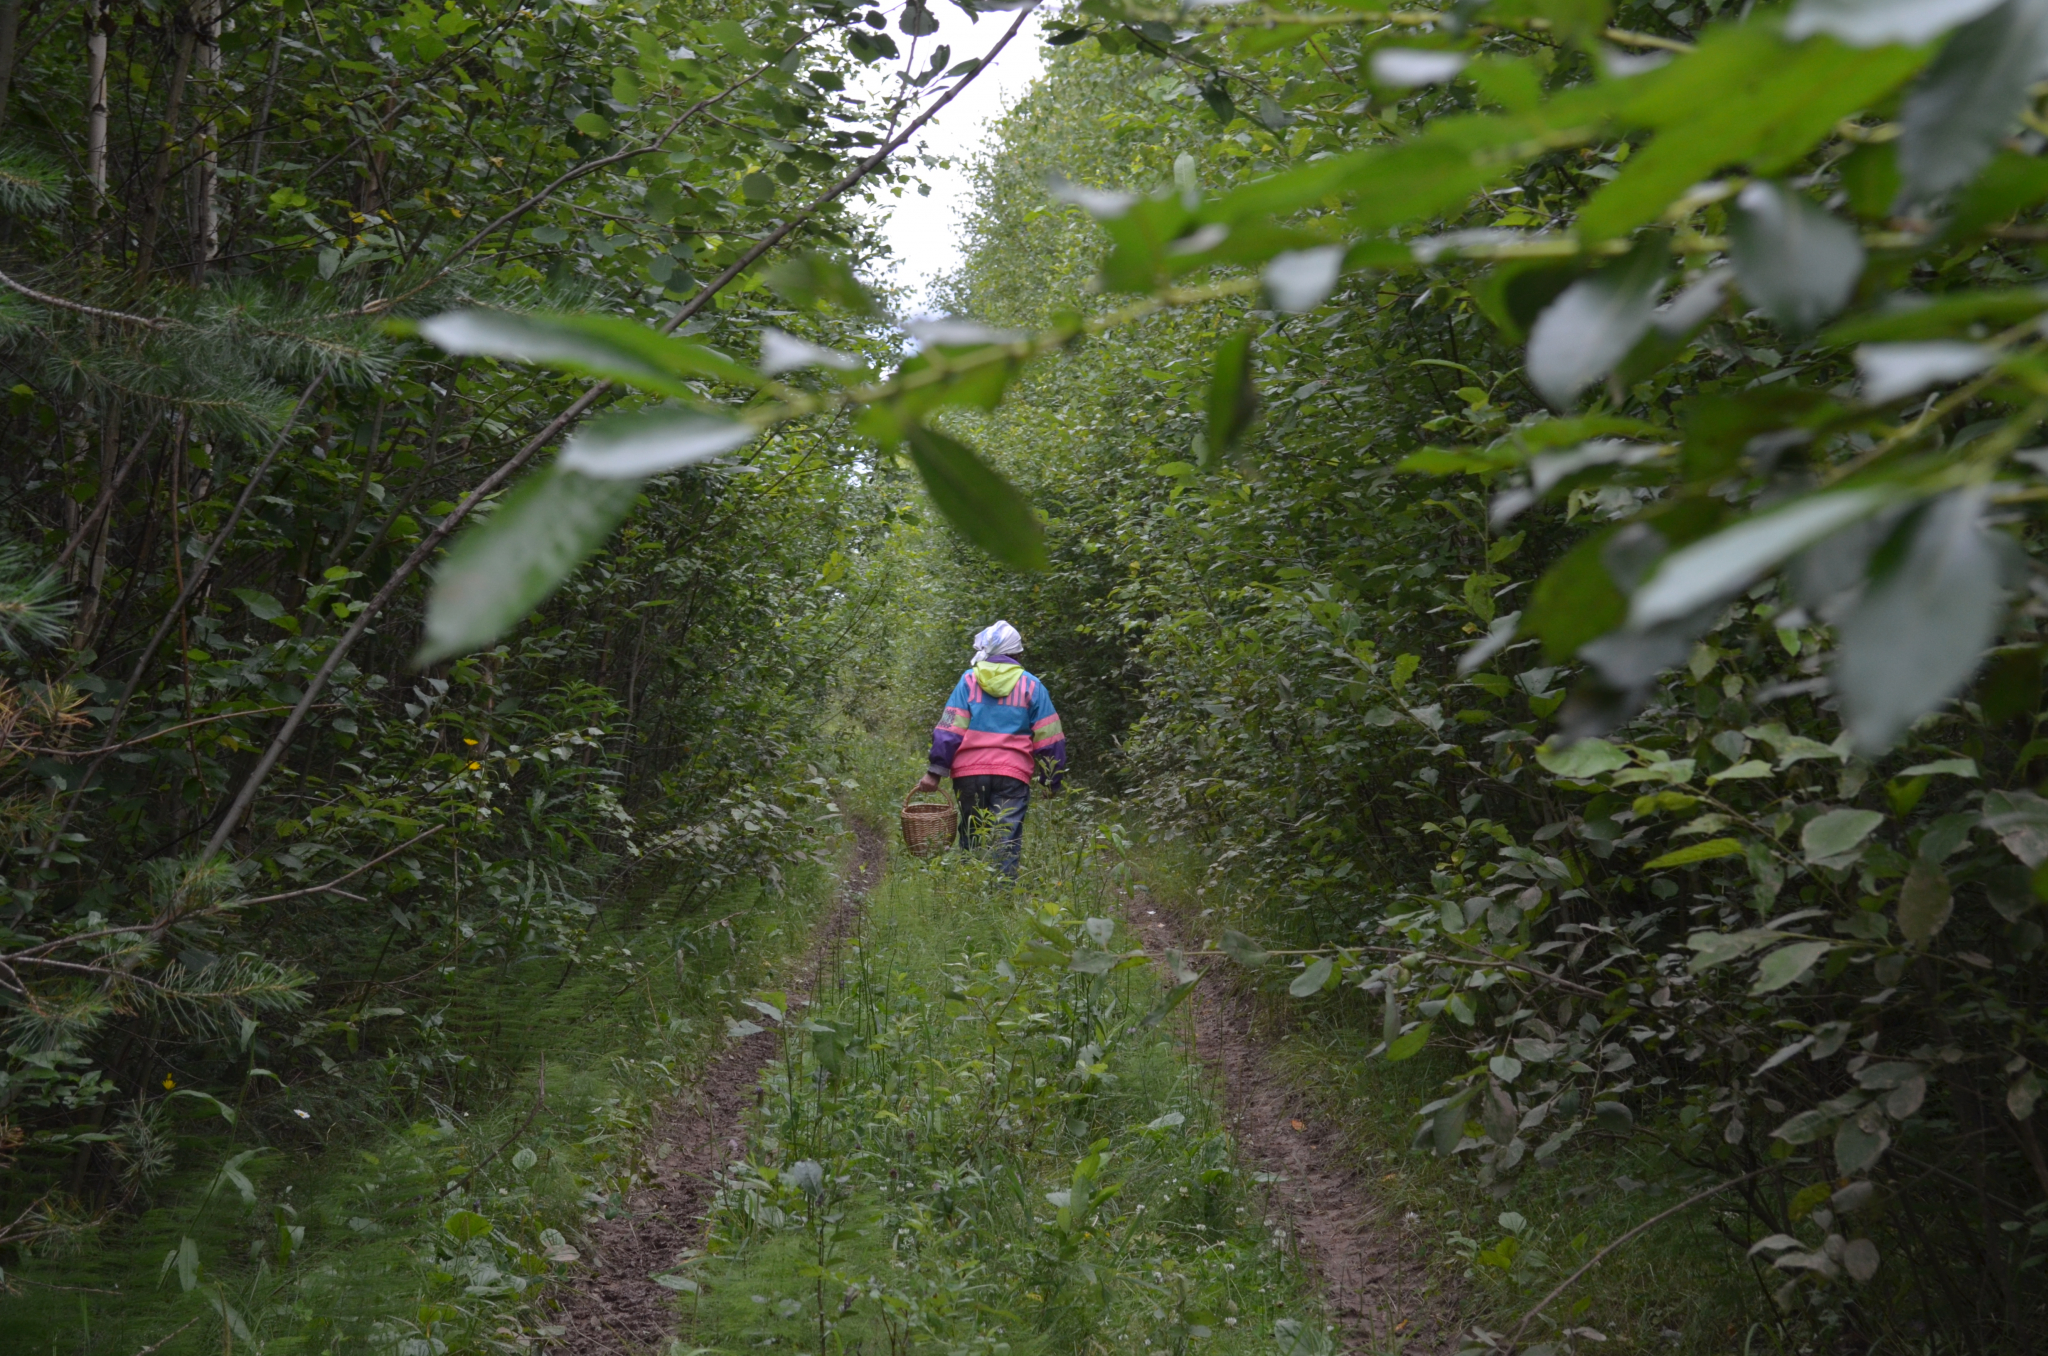 "Гламур в лесу поможет": спасатели советуют пензенцам ходить за грибами в яркой одежде